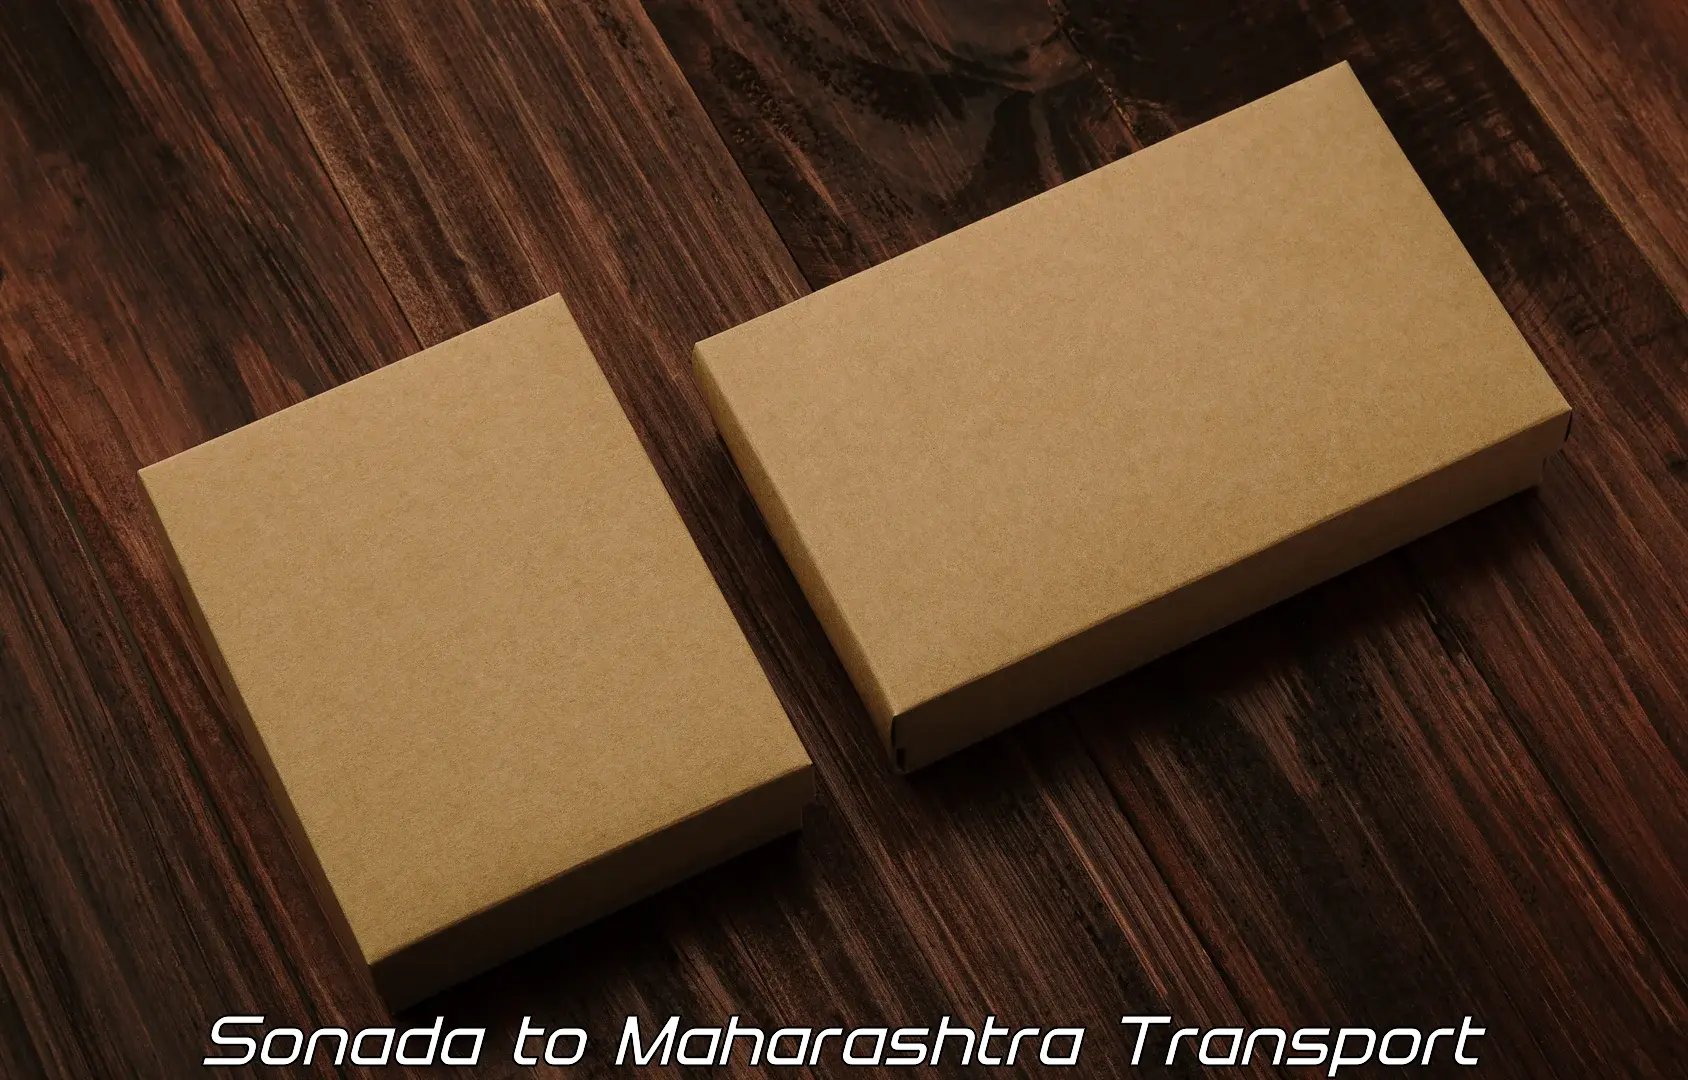 Online transport service Sonada to Maharashtra